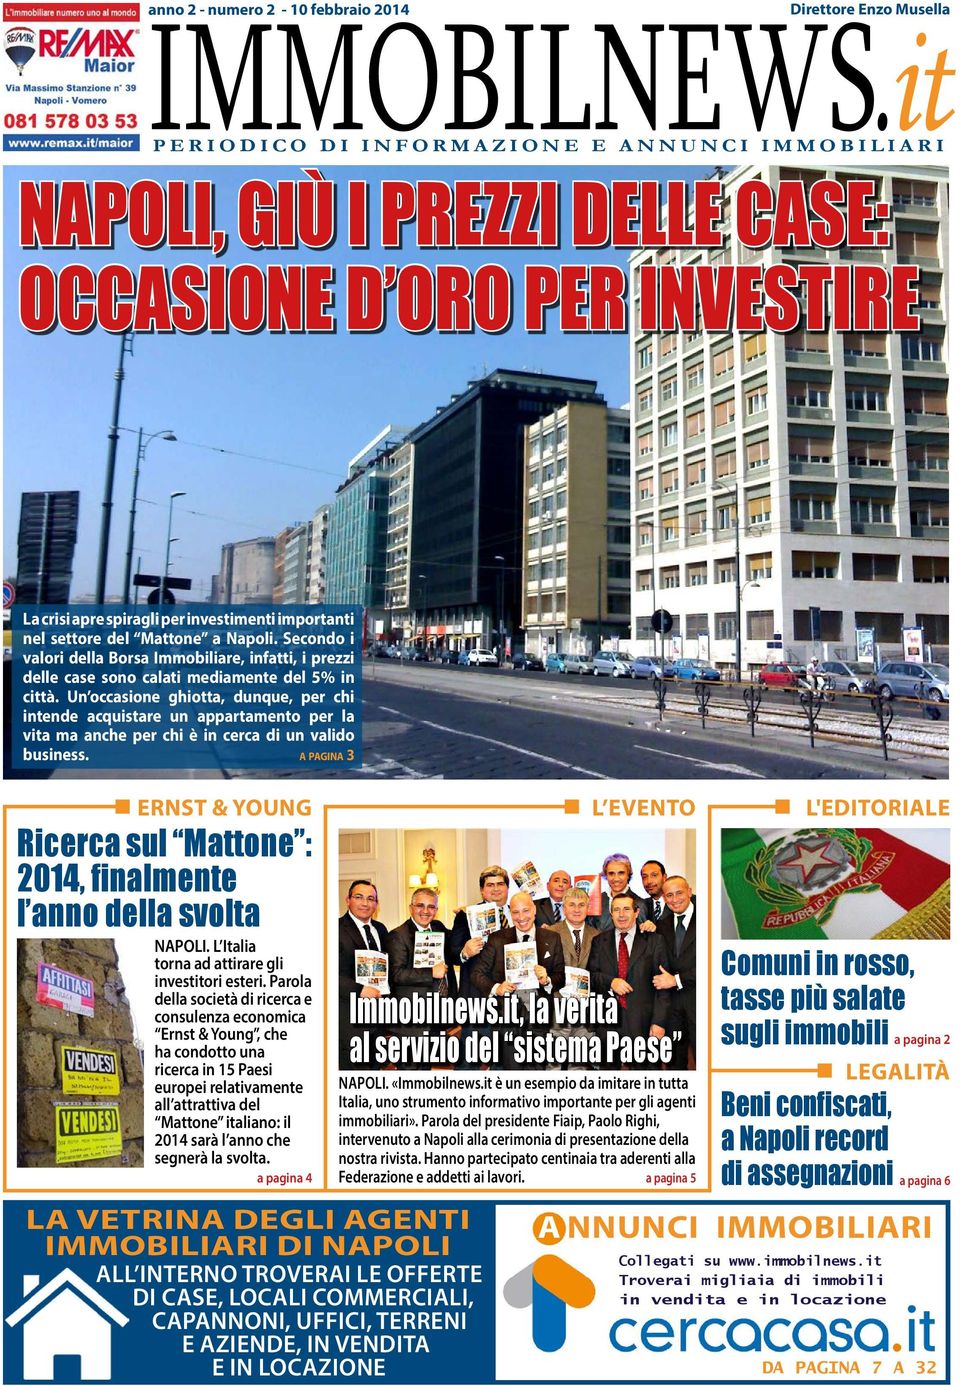 investimenti importanti nel settore del Mattone a Napoli. Secondo i valori della Borsa Immobiliare, infatti, i prezzi delle case sono calati mediamente del 5% in città.